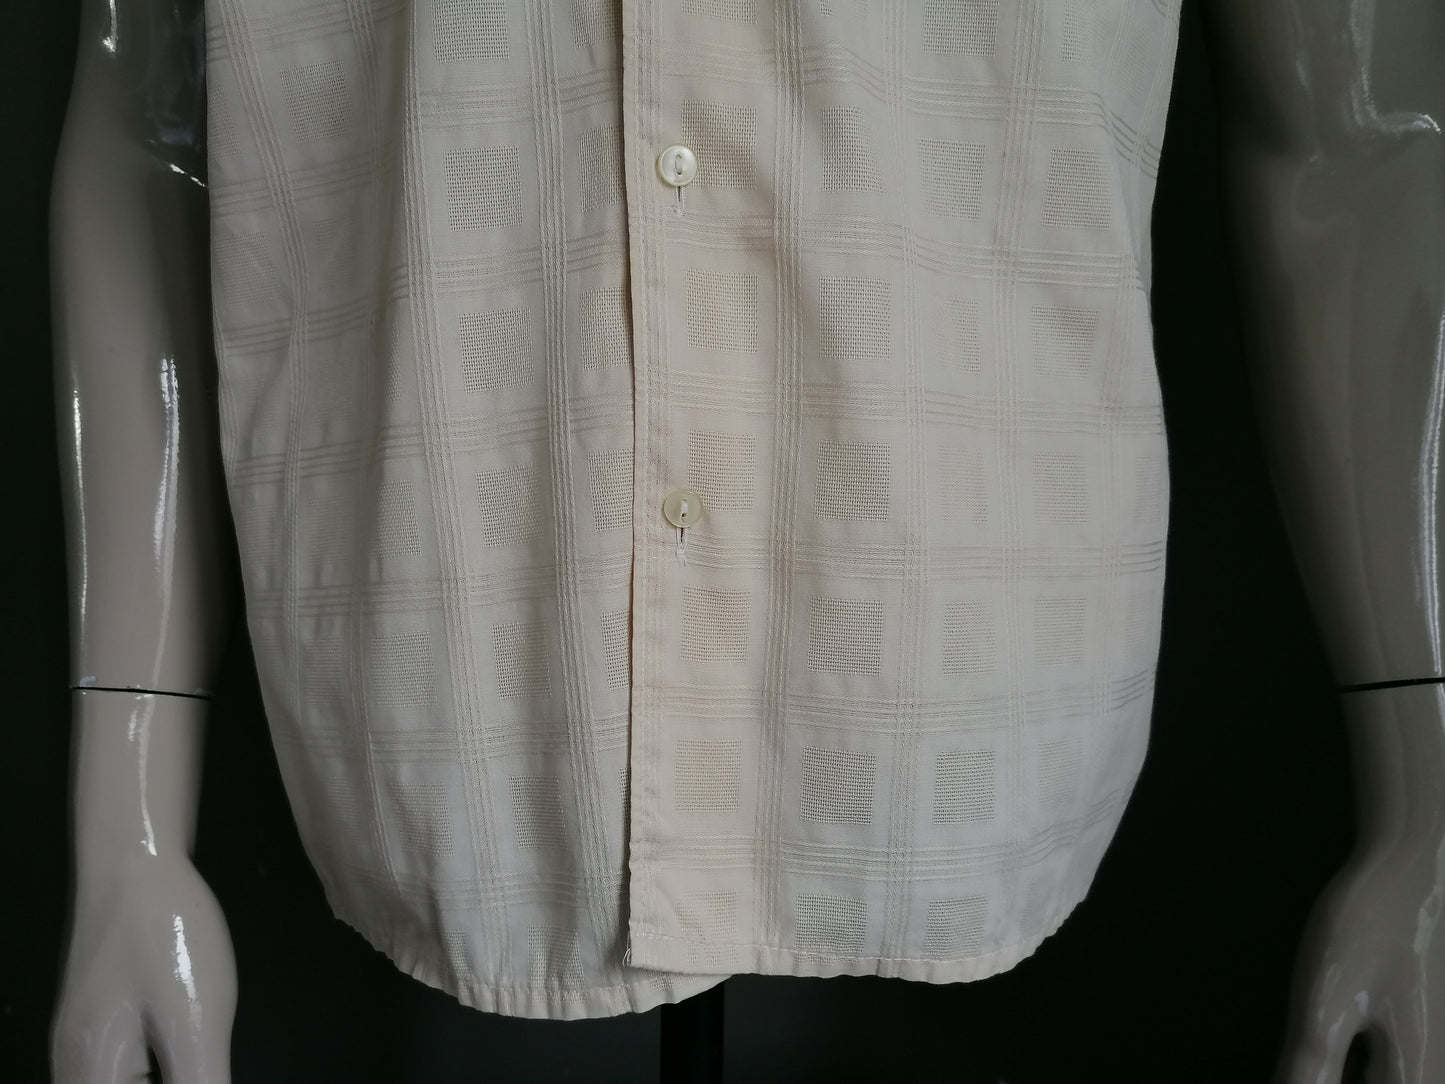 Vintage Cottonova 70's overhemd korte mouw. Puntkraag. Beige motief. Maat XL.